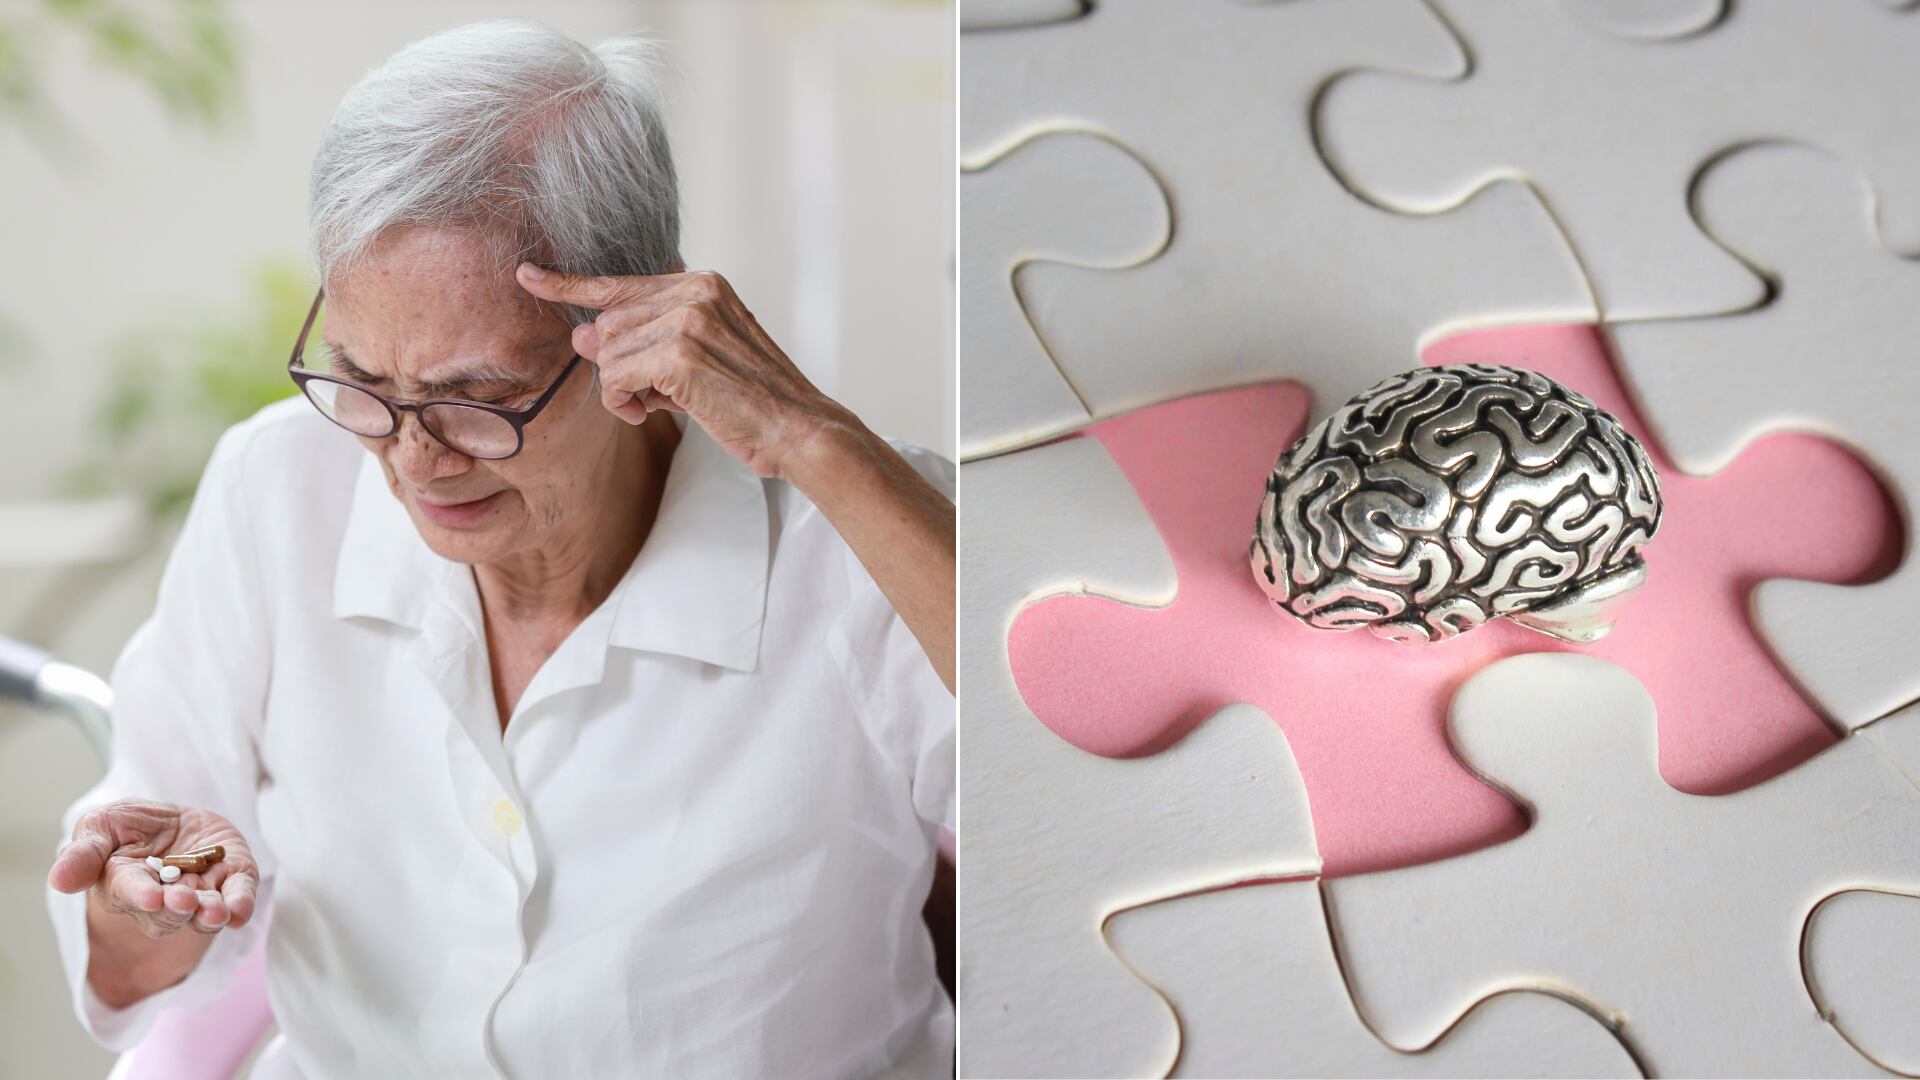 Investigación de ISGlobal muestra que el alzhéimer afecta más a las mujeres, quienes tienen mayor riesgo y un deterioro cognitivo más rápido.